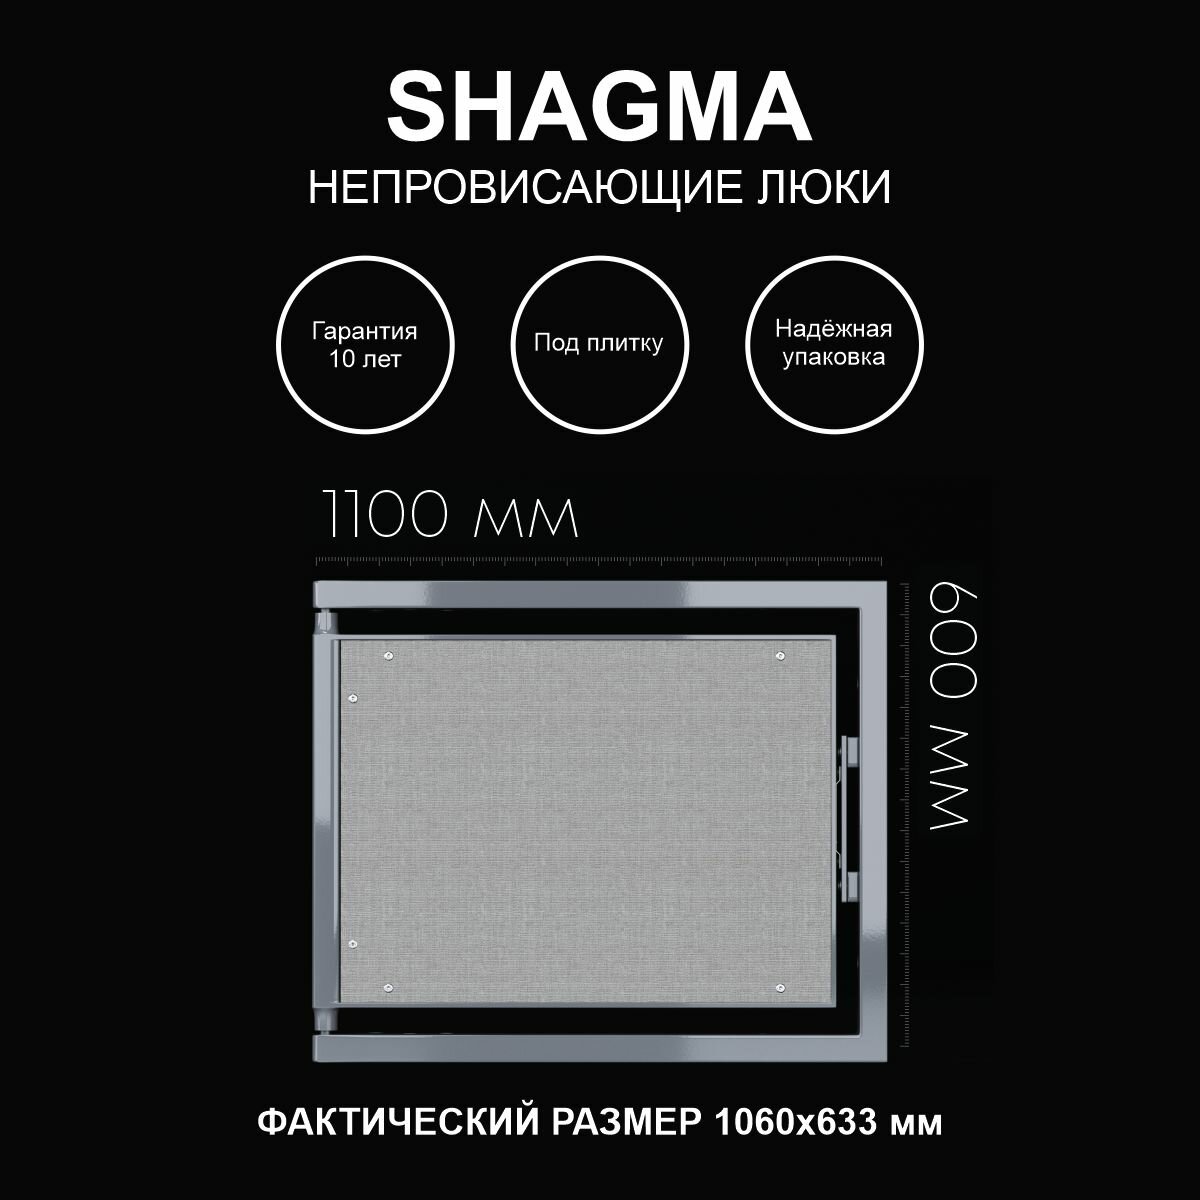 Люк ревизионный под плитку 1100х600 мм одностворчатый сантехнический настенный фактический размер 1060(ширина) х 633(высота) мм SHAGMA